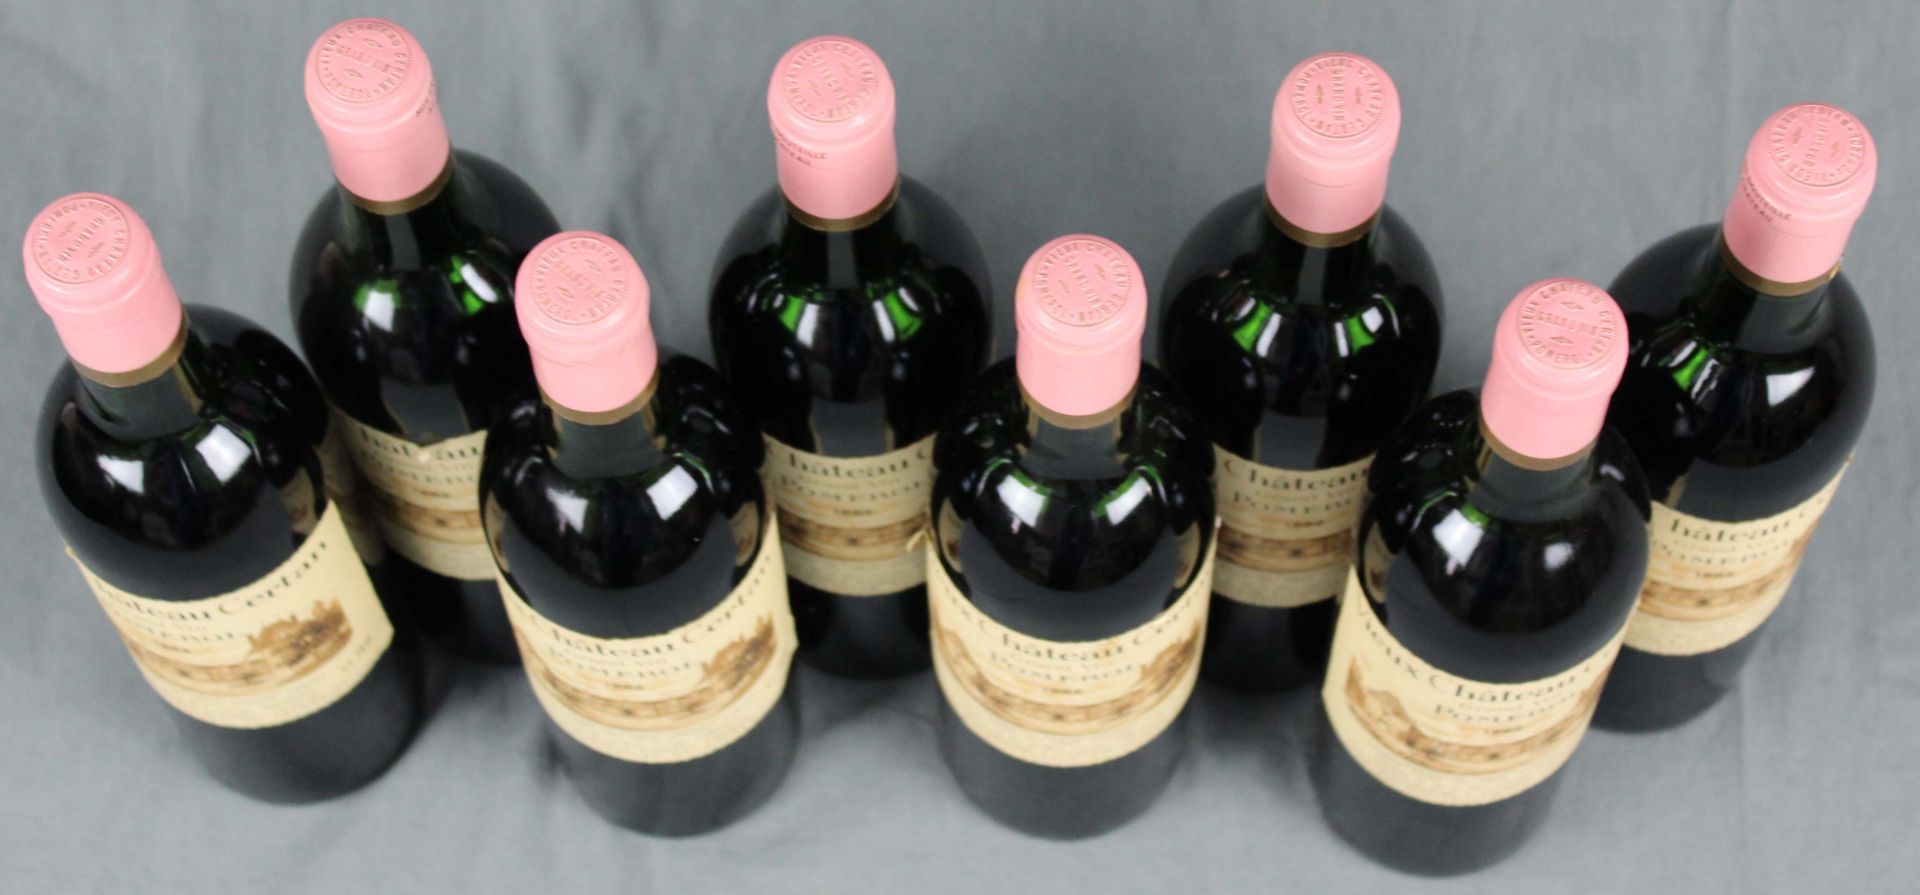 1982 Vieux Chateau Certan. Pomerol AC.8 whole bottles. 75 cl, Mise en Bouteille au Chateau. - Bild 2 aus 6